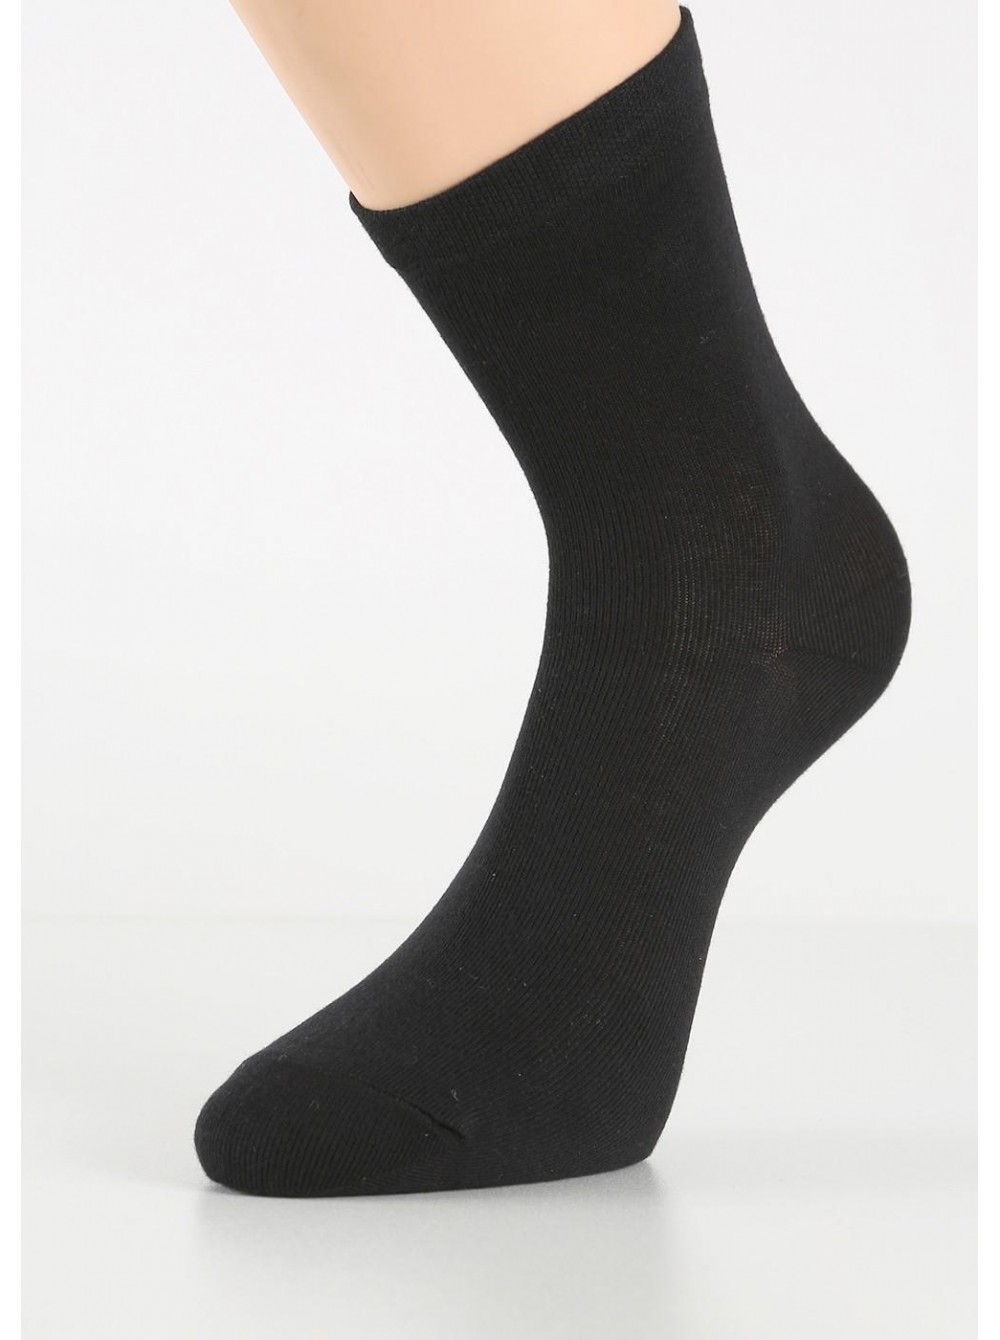 Черные носки женские